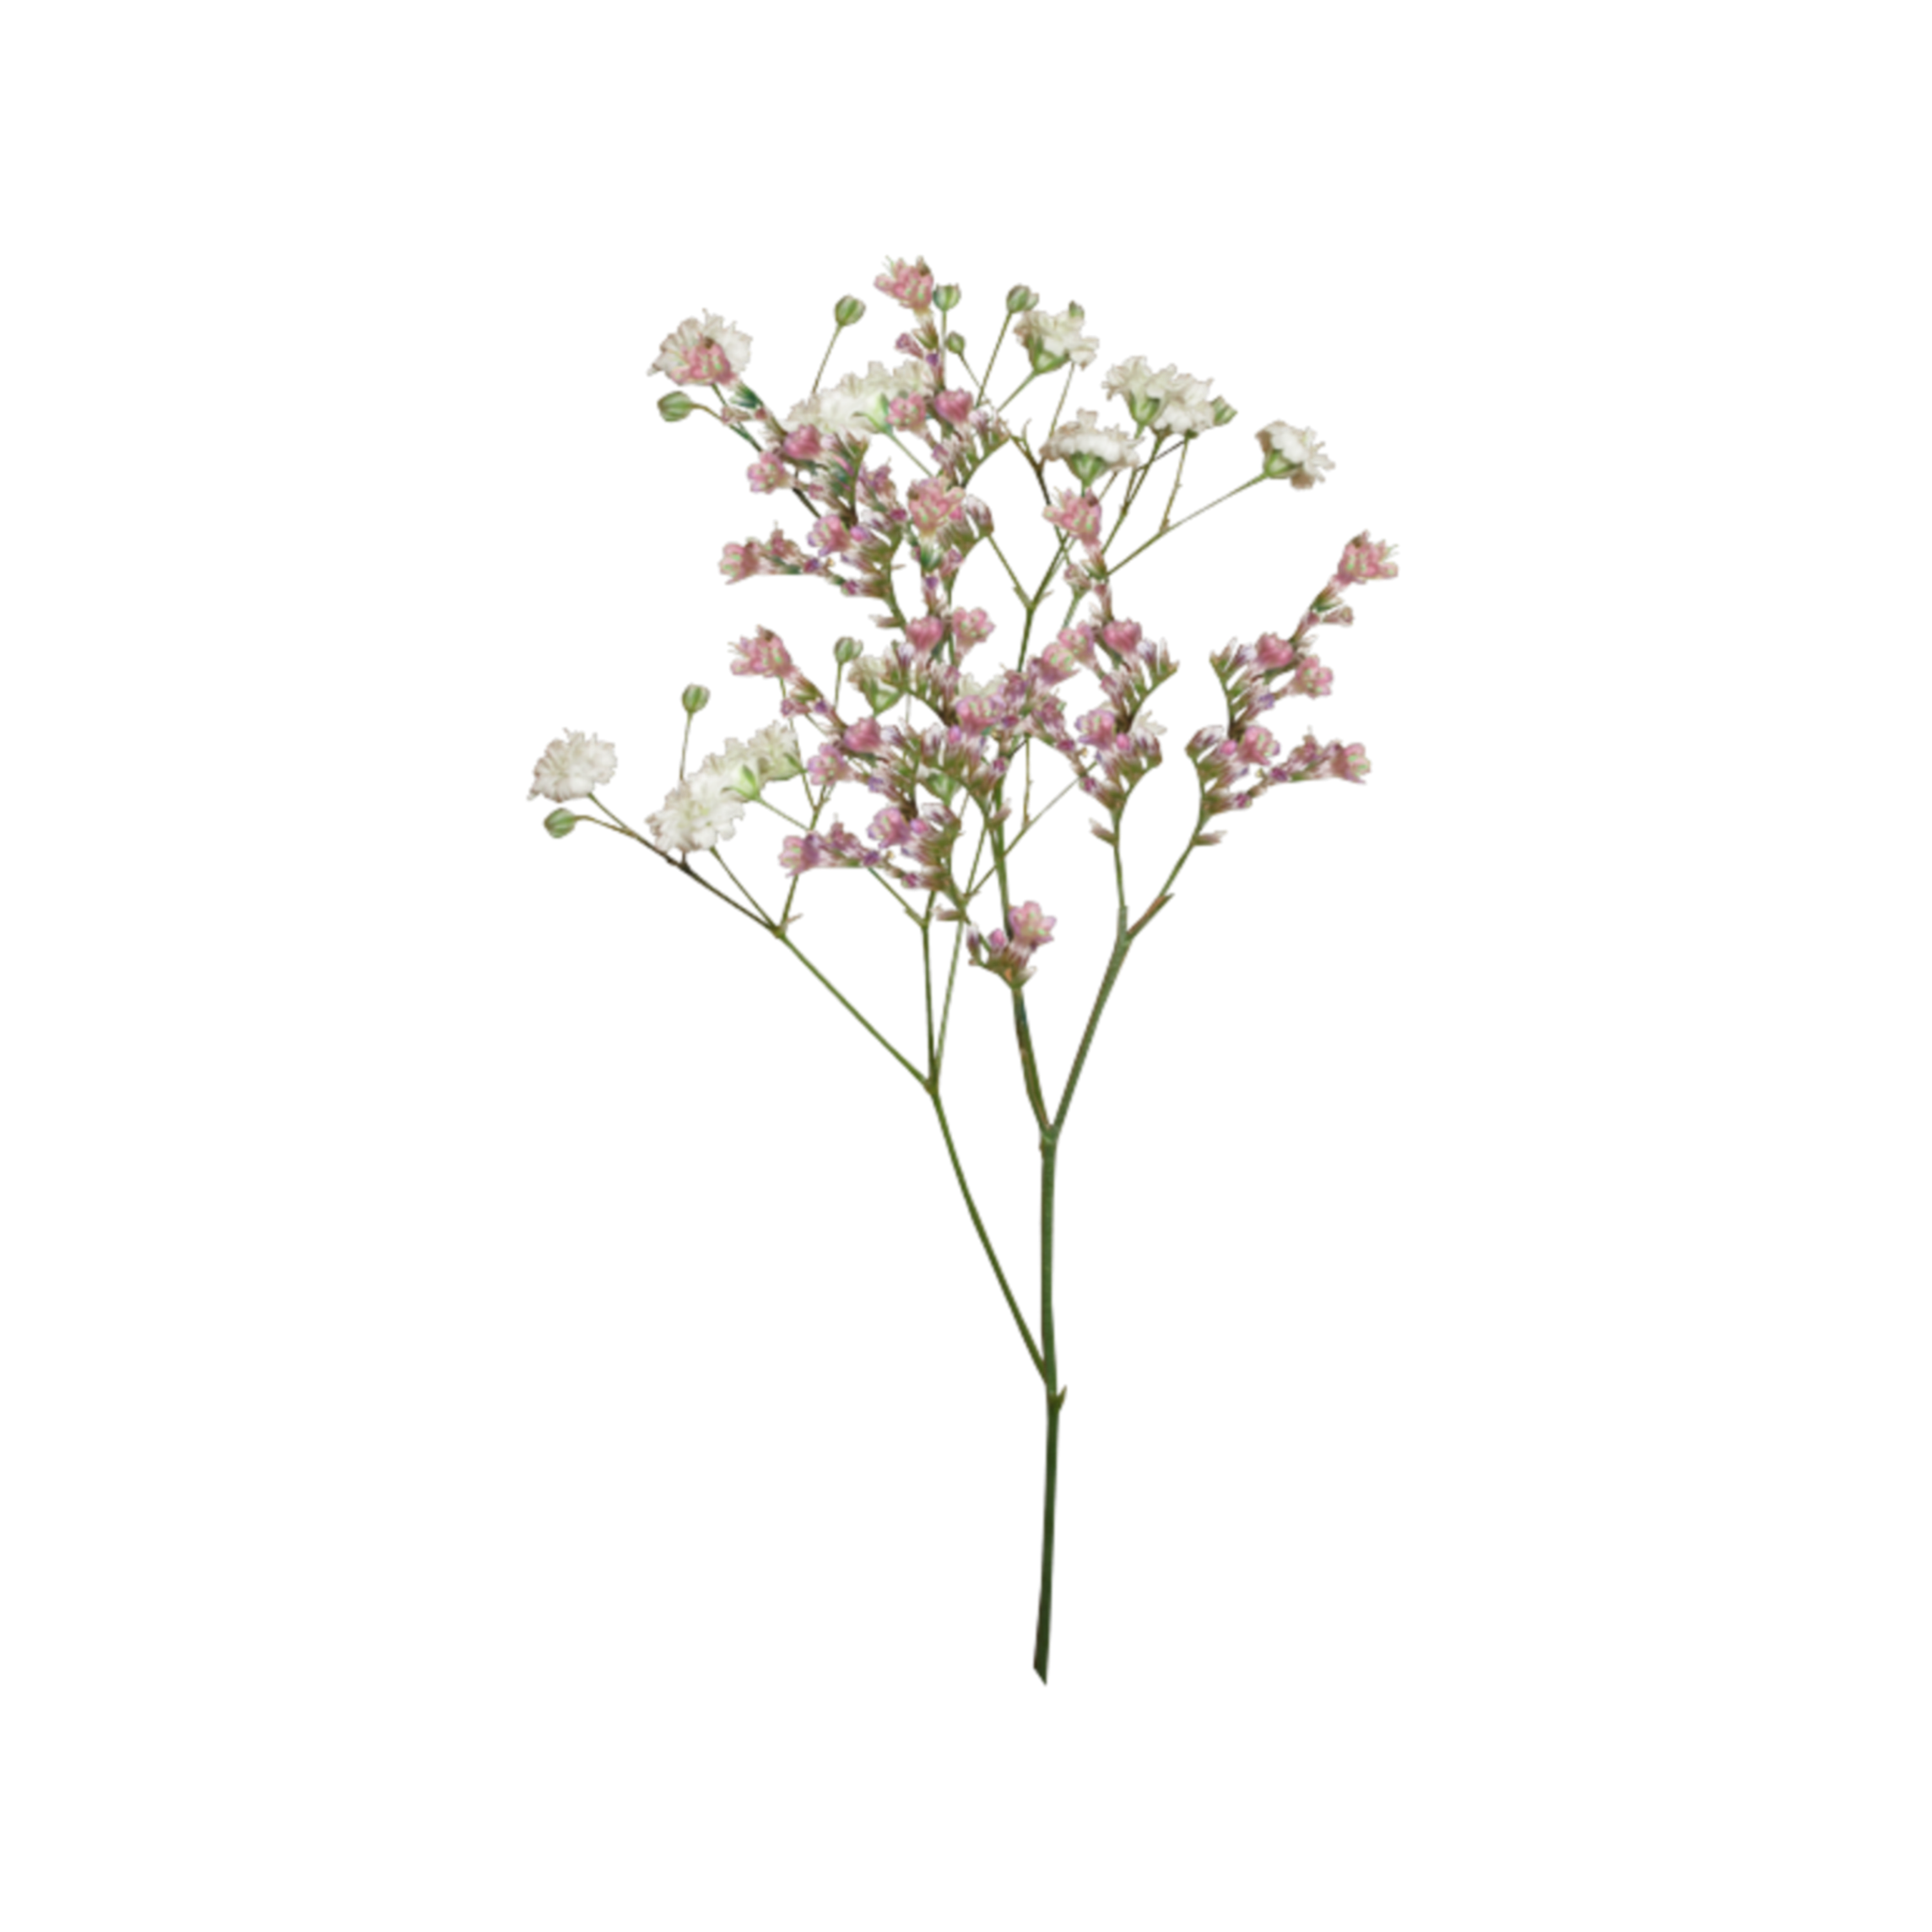 Fondo de imagen PNG de flores secas